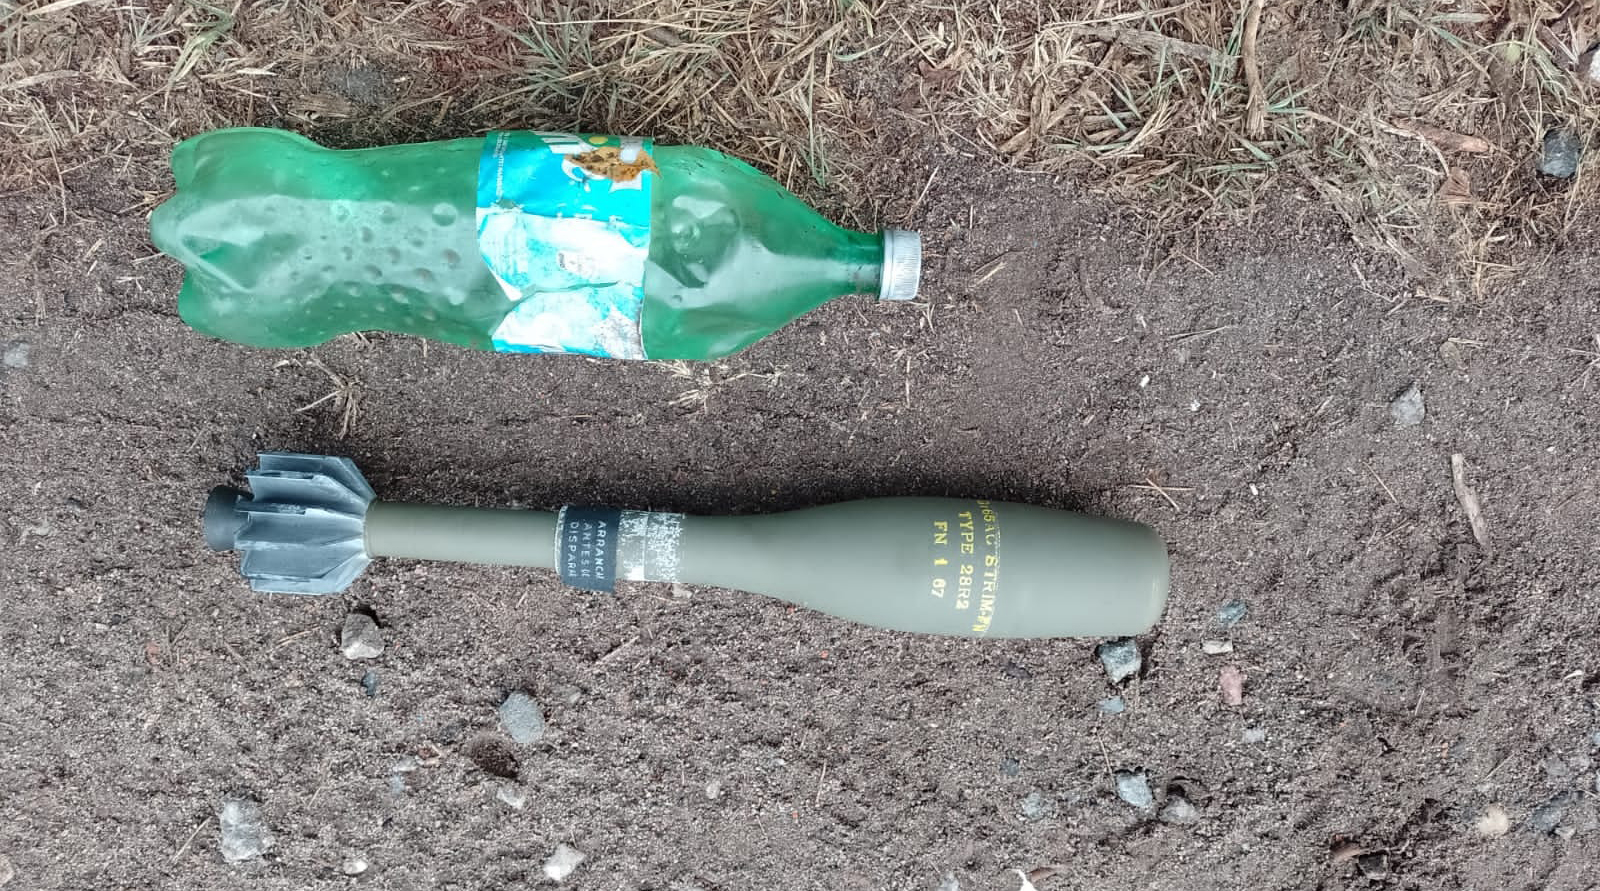 Otro de los explosivos: botella de litro y medio para comparar.